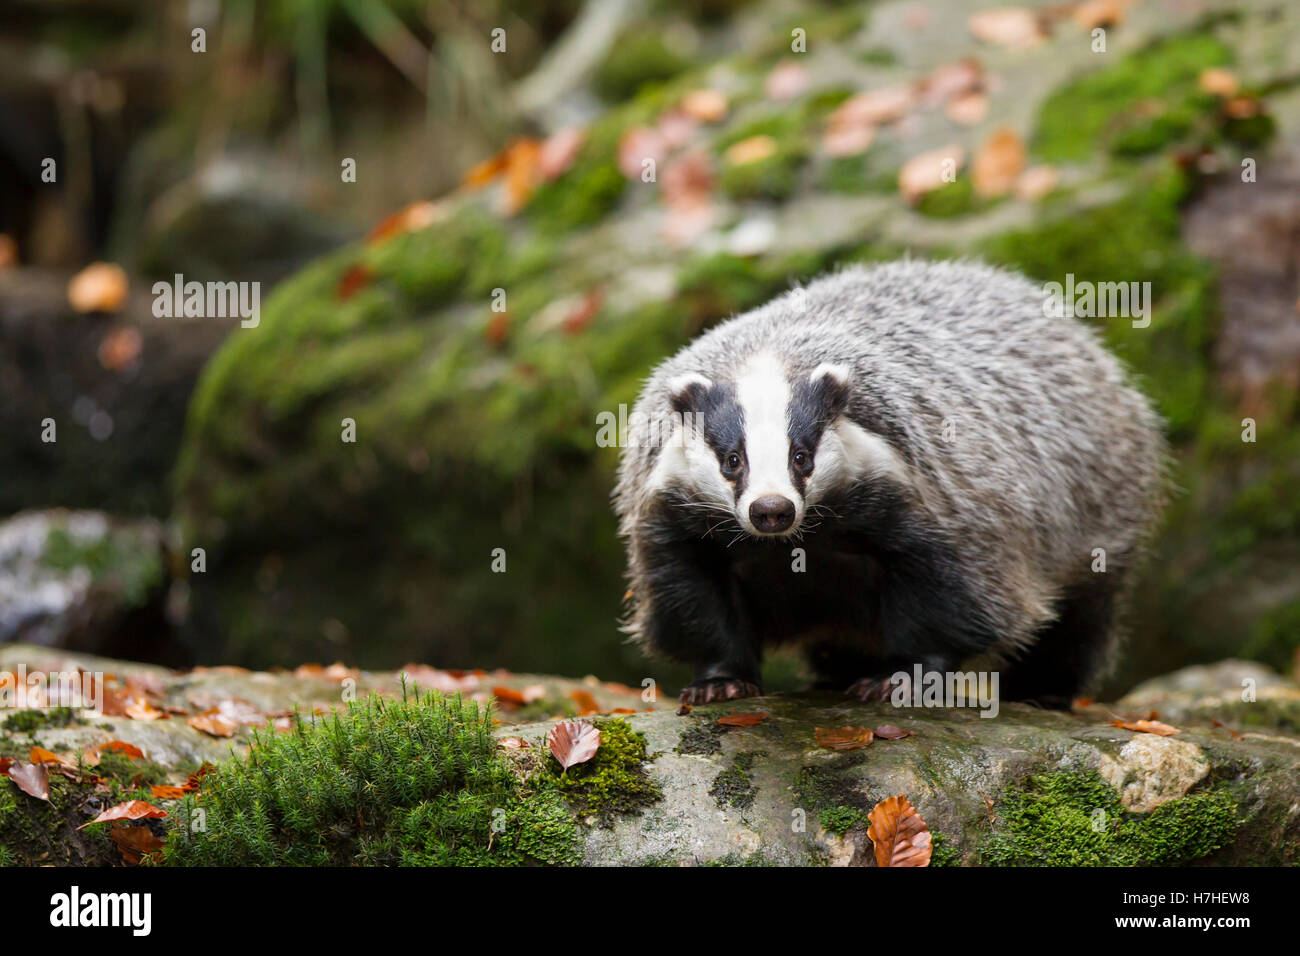 Dachs, Meles meles, European badger Stock Photo